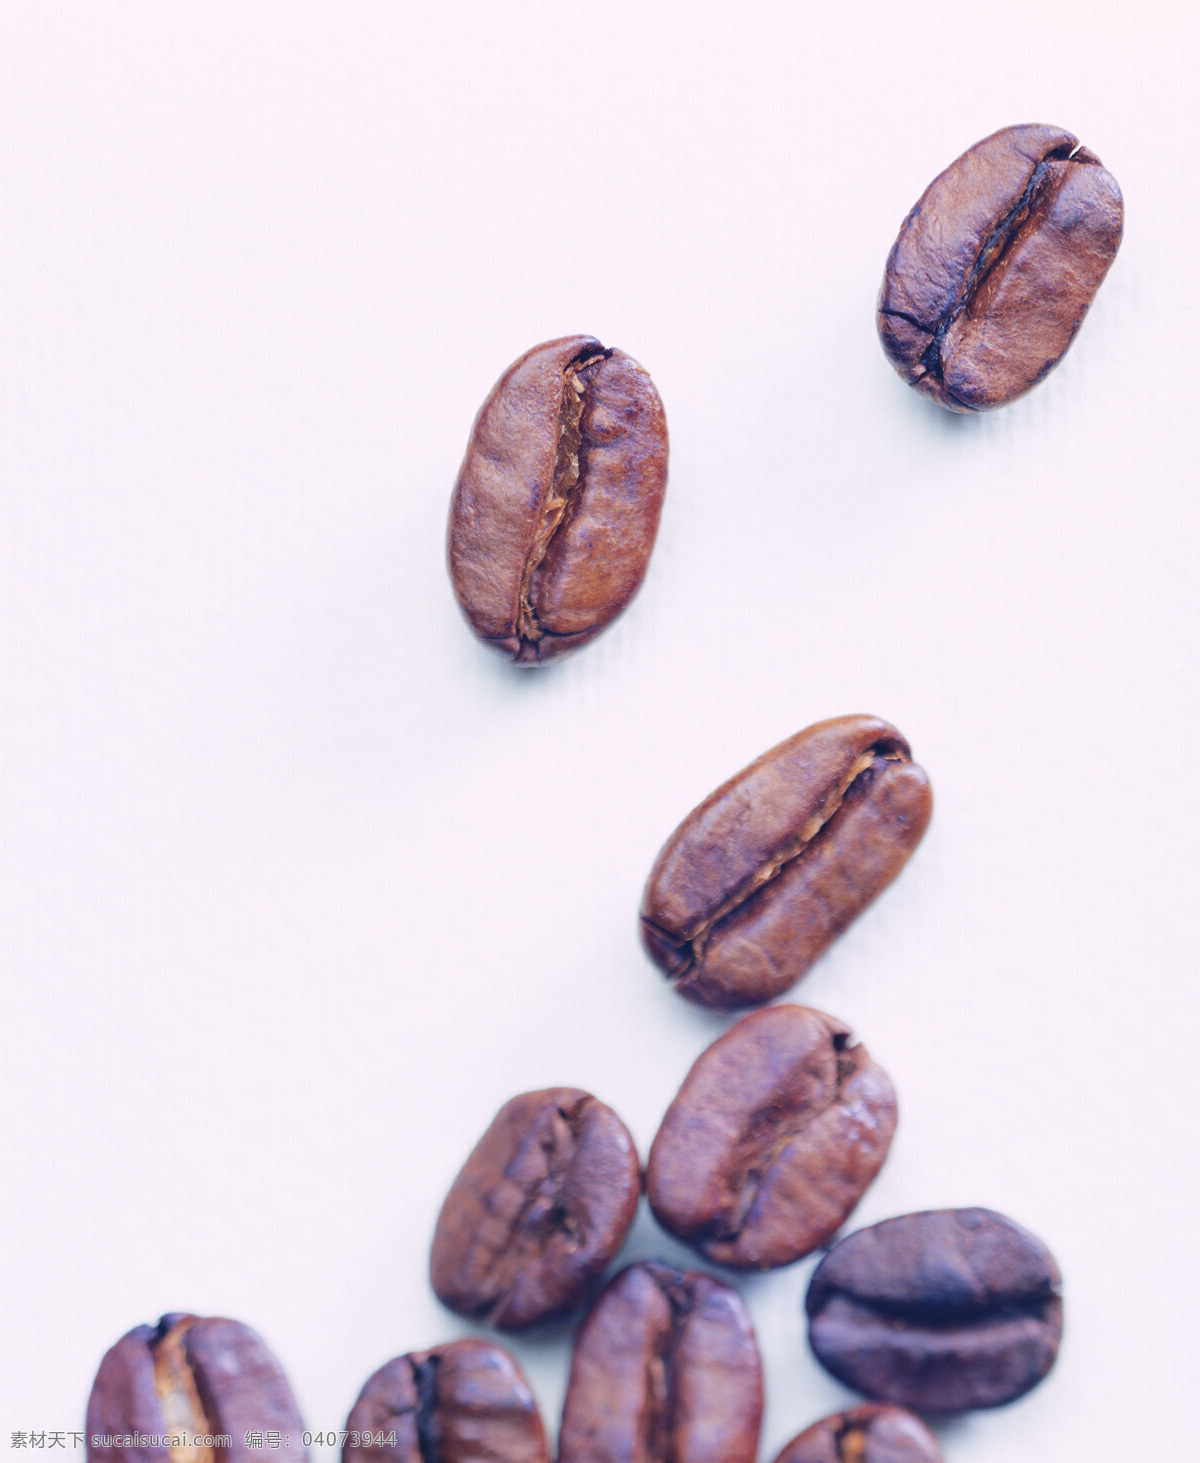 咖啡豆 特写 颗粒 饱满 褐色 杯子 咖啡 咖啡原料 高清图片 咖啡图片 餐饮美食